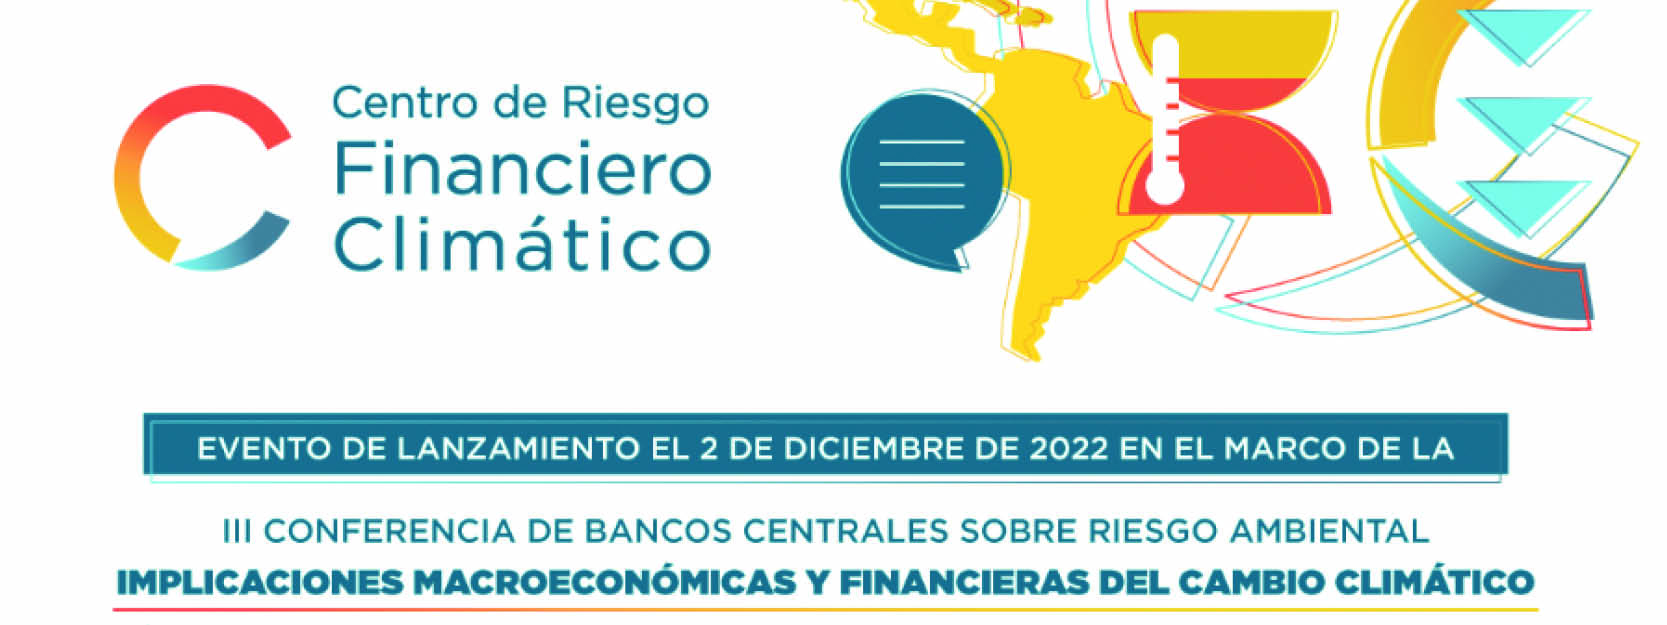 Evento de lanzamiento – Centro de Riesgo Financiero Climático en América Latina y el Caribe